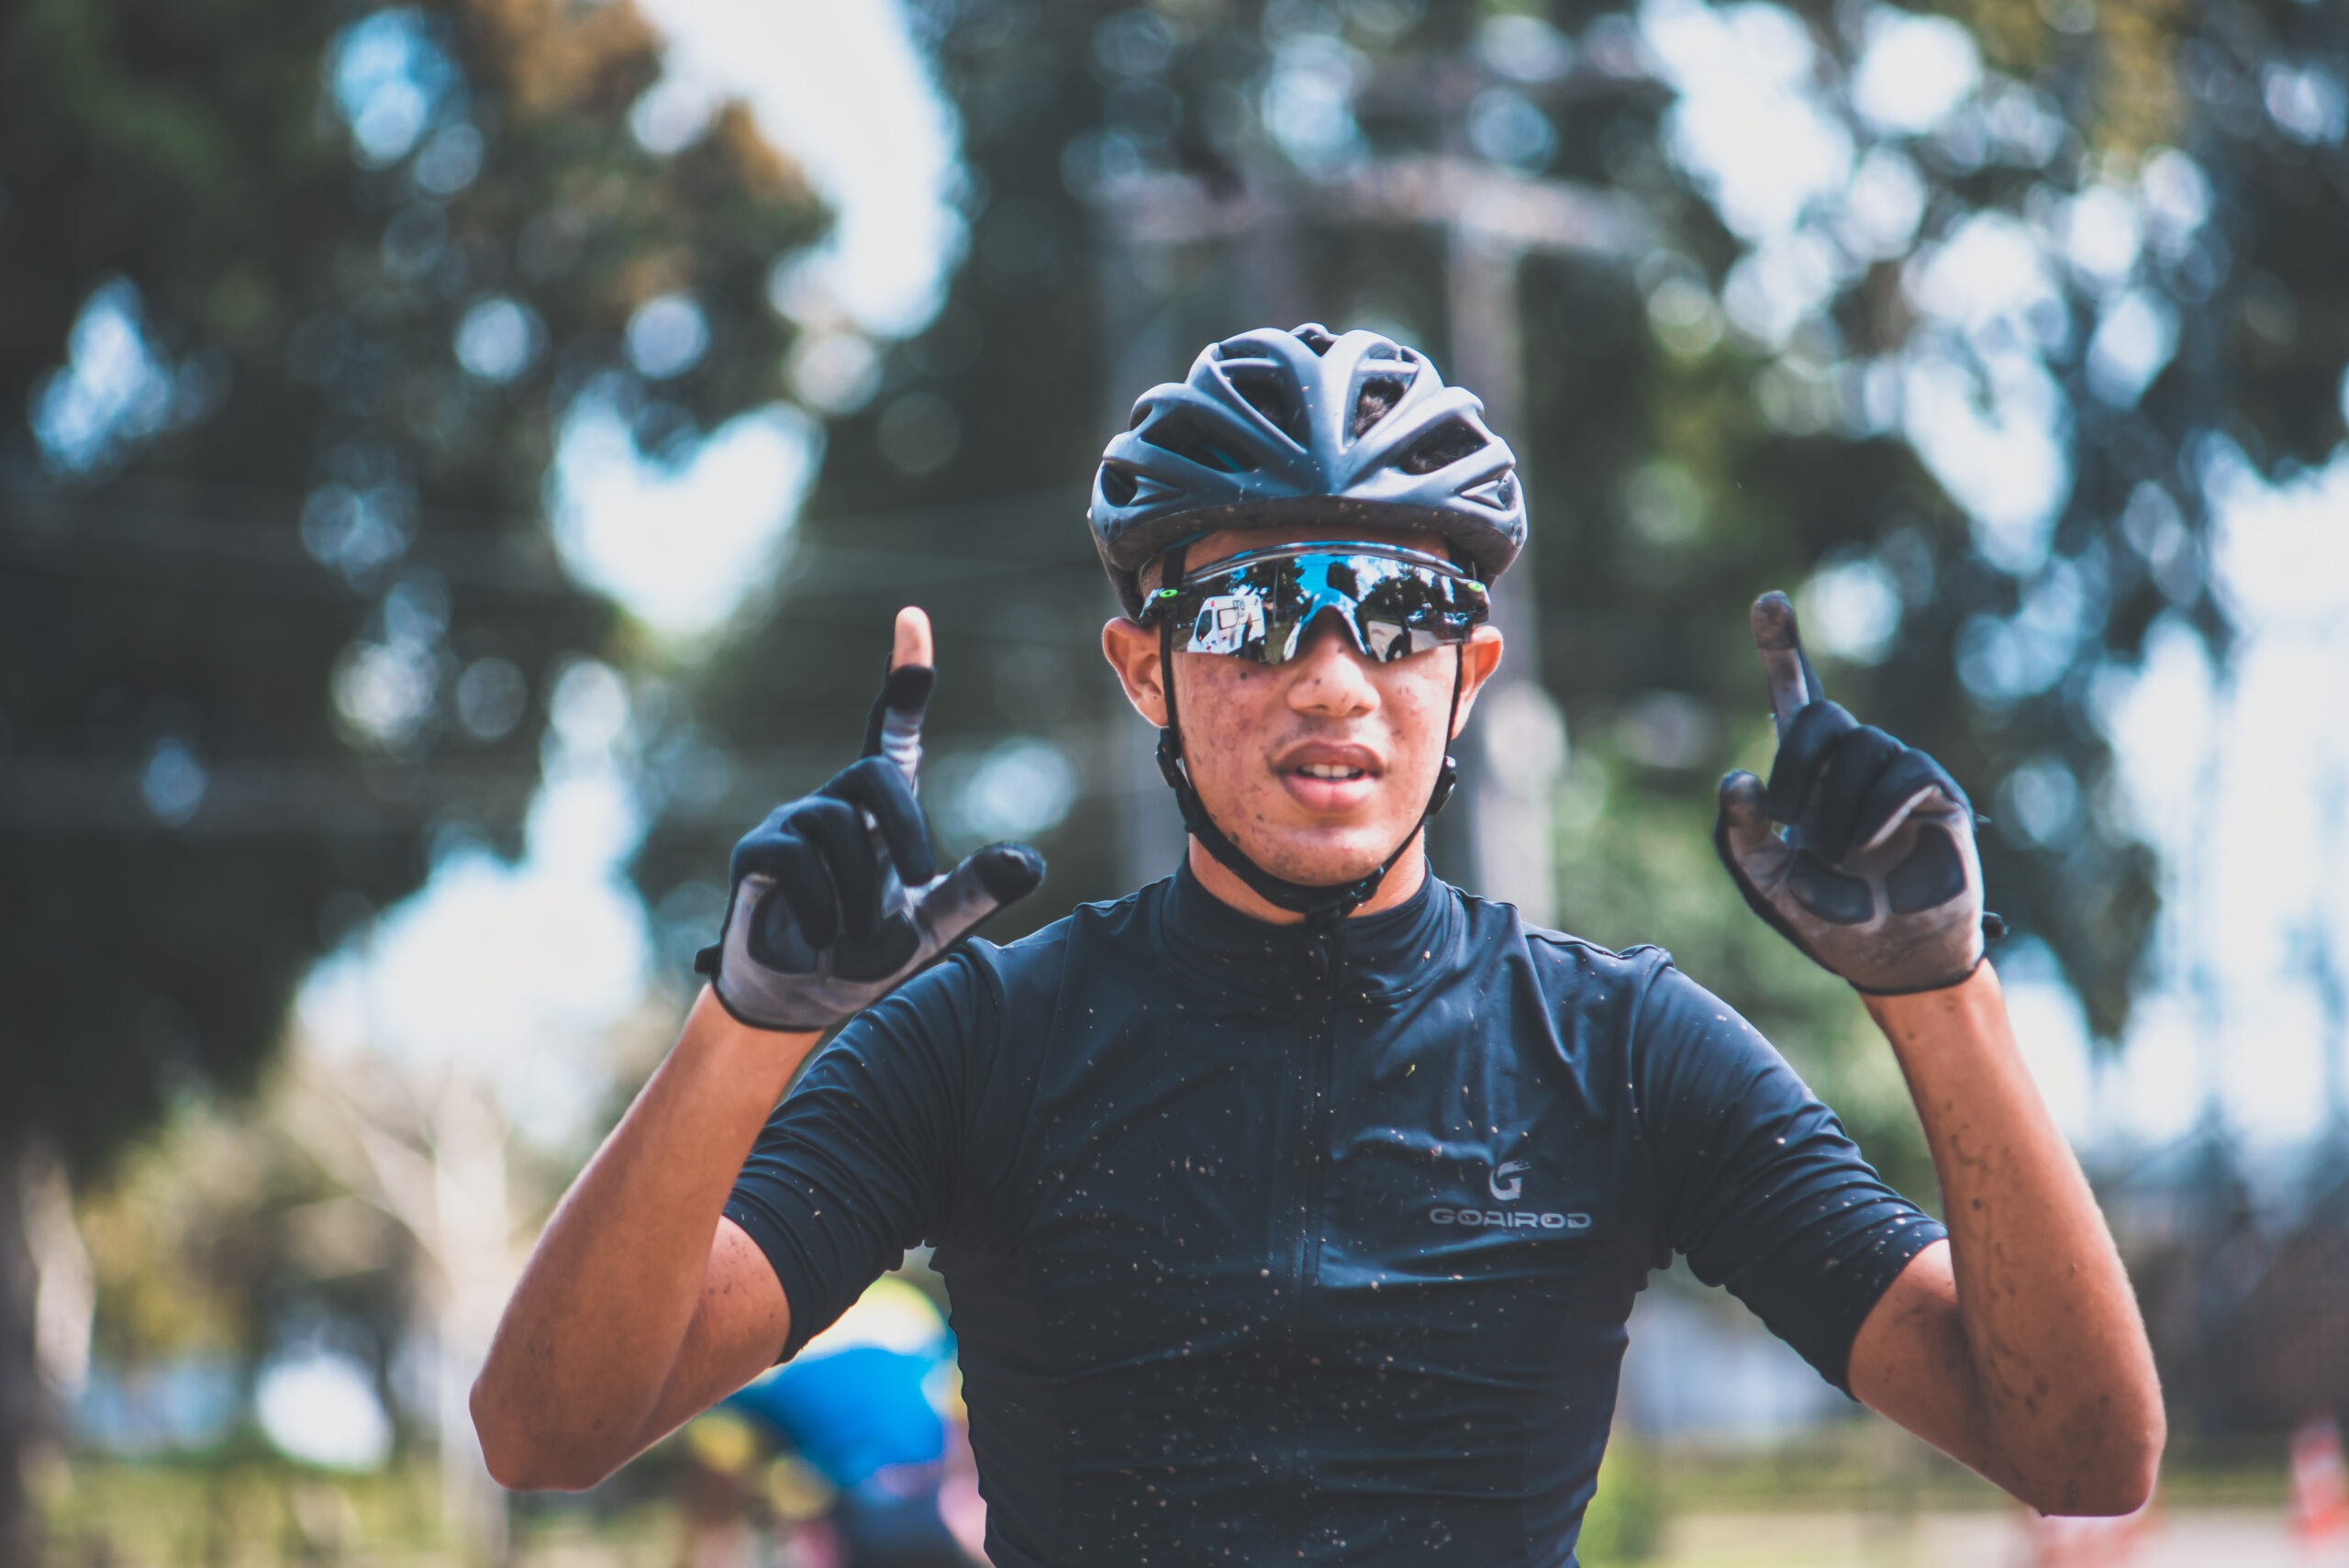 Medalhista e campeão XCO de Moutain Bike, camaçariense busca ajuda para custear treinos e competições